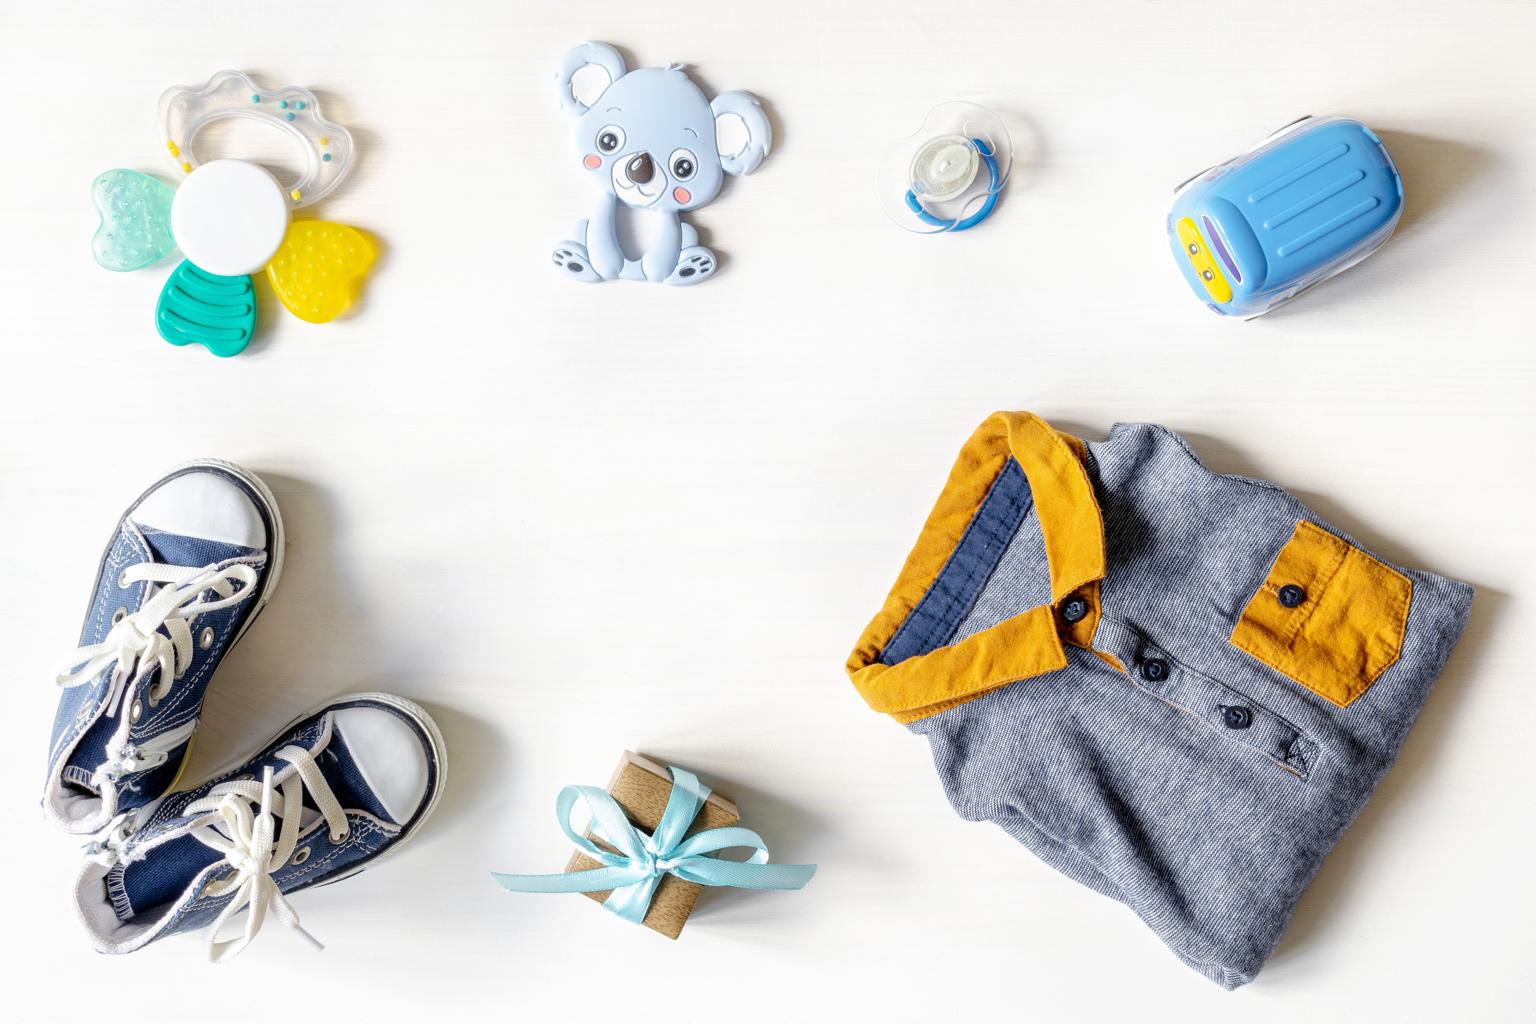 roupinha, tenis e brinquedos de bebê em cima de superfície branca representando presente para recém-nascido